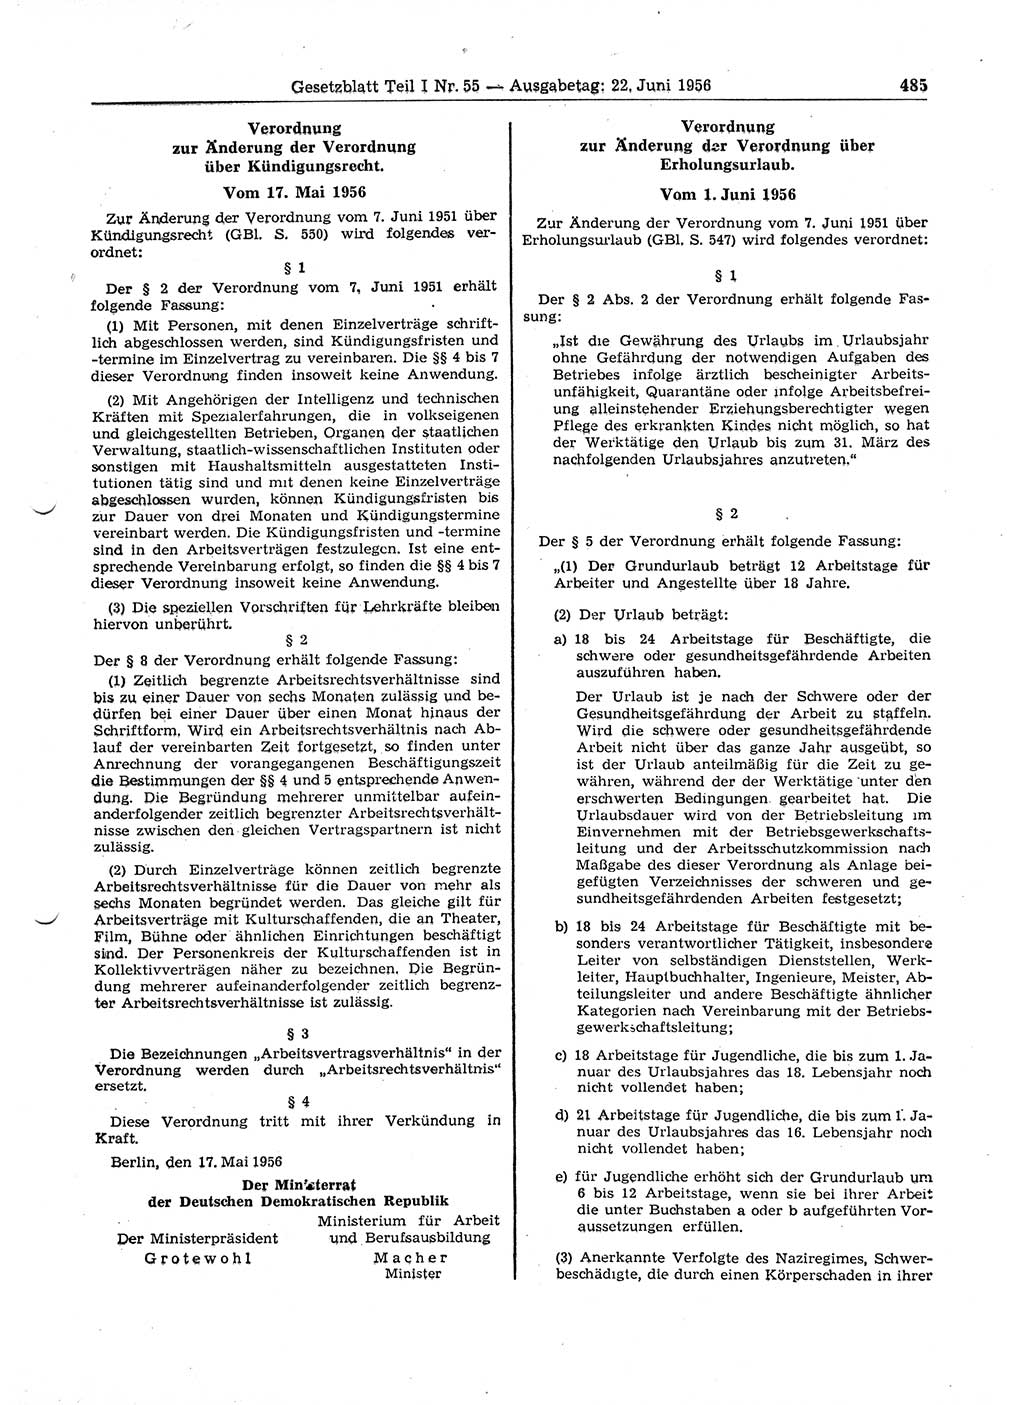 Gesetzblatt (GBl.) der Deutschen Demokratischen Republik (DDR) Teil Ⅰ 1956, Seite 485 (GBl. DDR Ⅰ 1956, S. 485)